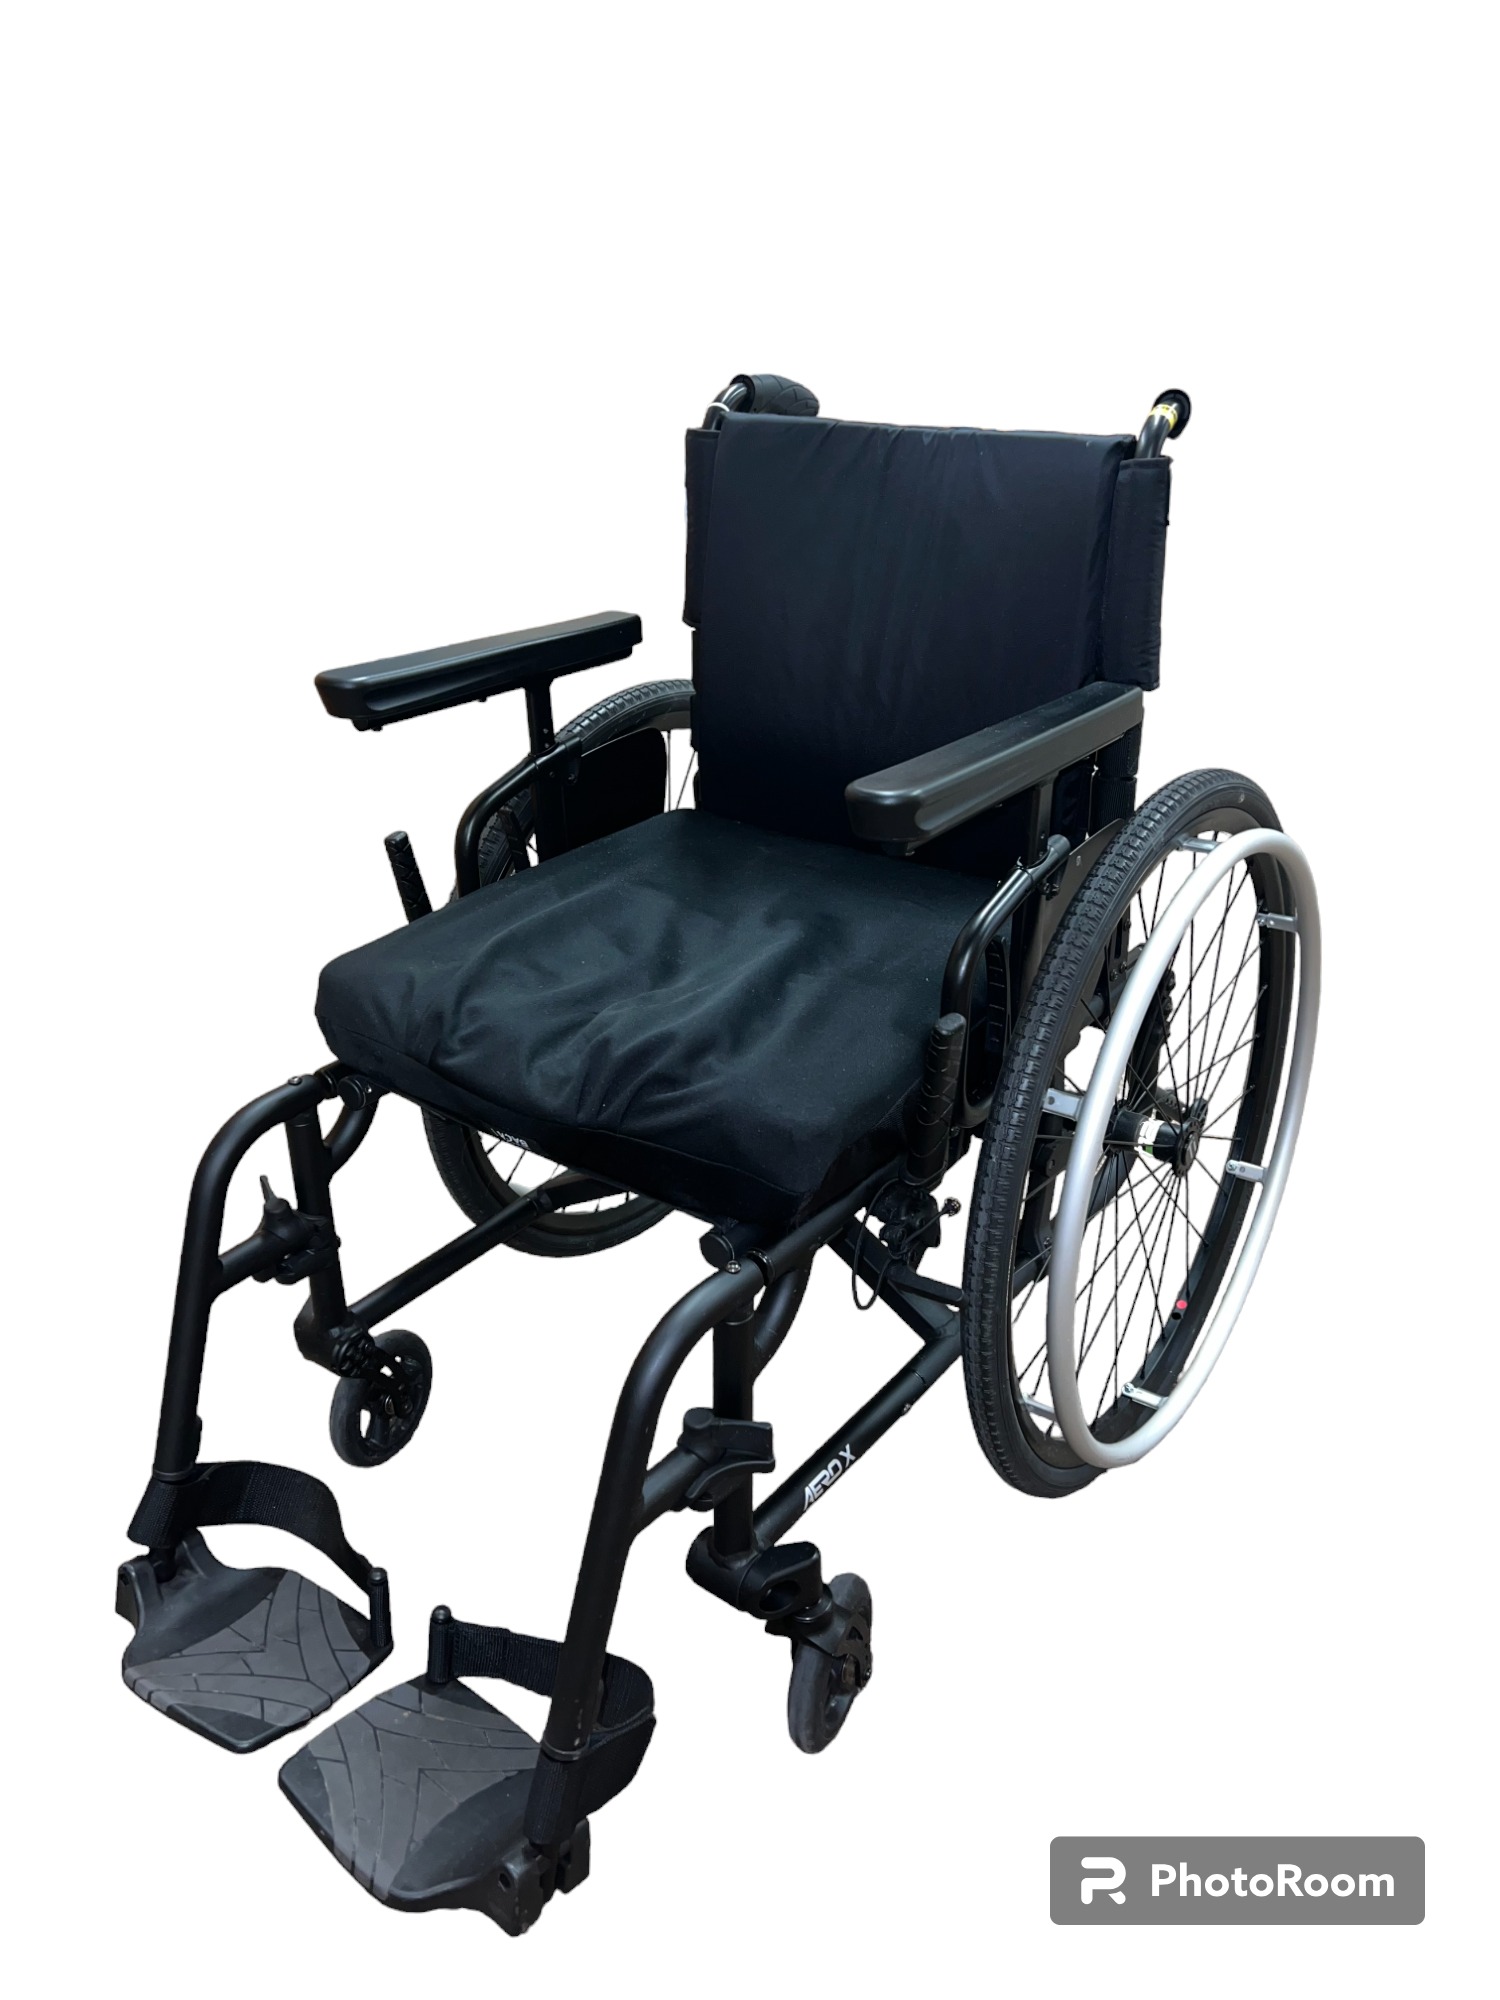 Thumbnail of TiLite Aero X Series 2 Wheelchair.